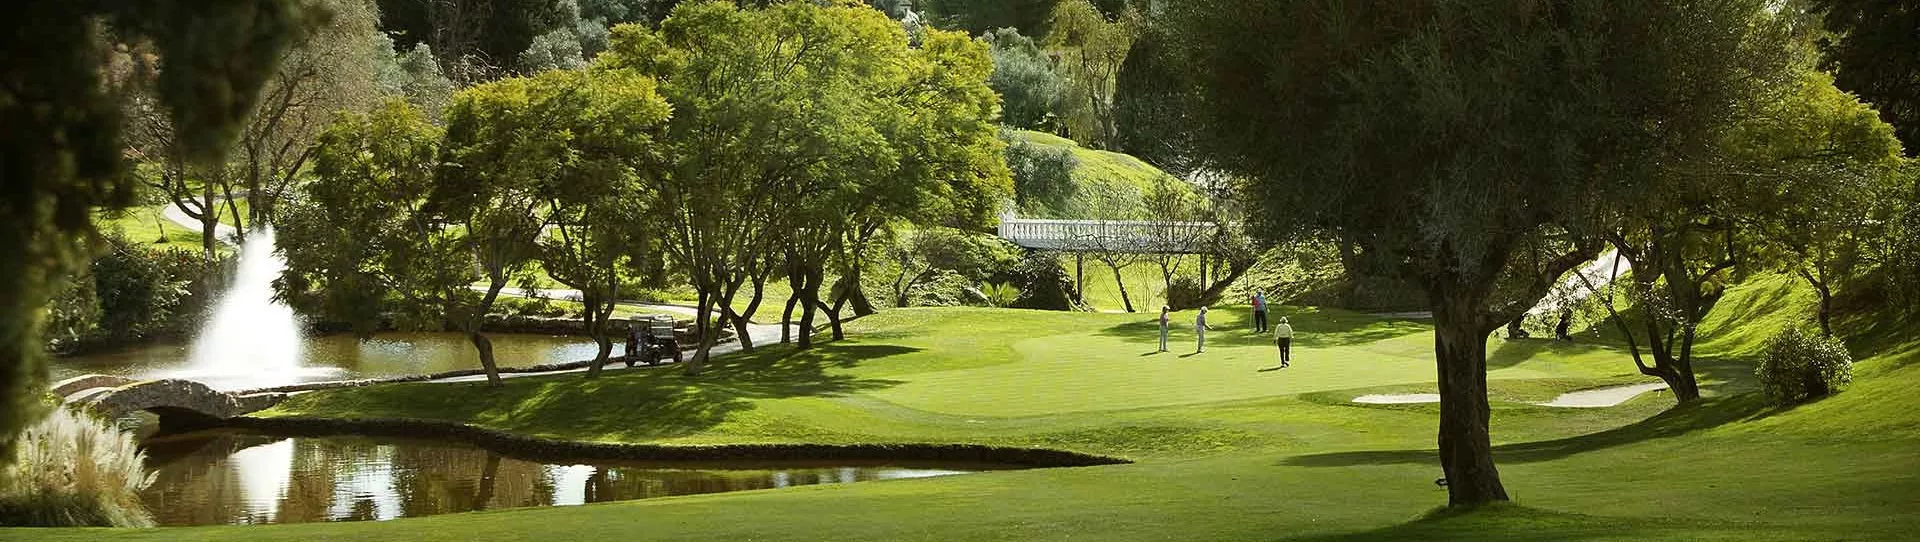 Spain golf courses - Aloha Golf Club - Photo 1